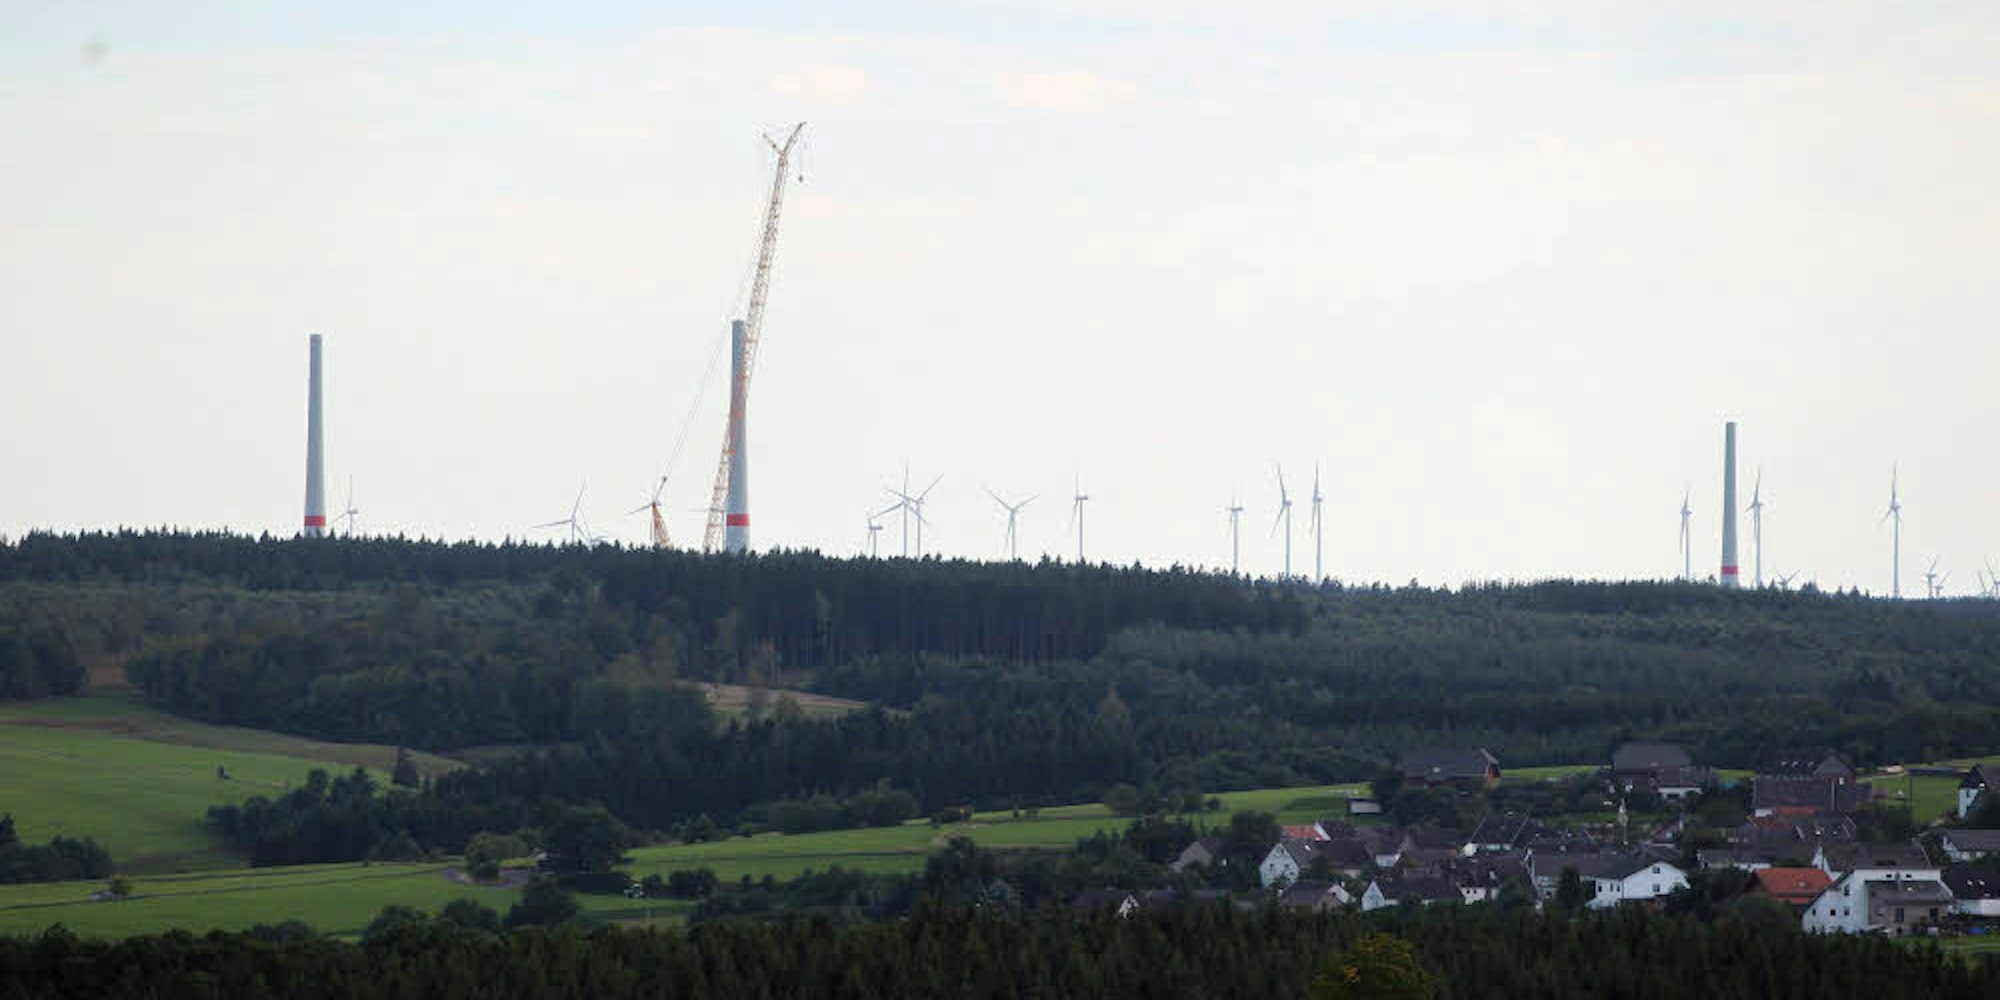 Weithin sichtbar sind die Stümpfe der Windräder im Windpark Dahlem IV, die vorerst nicht weitergebaut werden können.